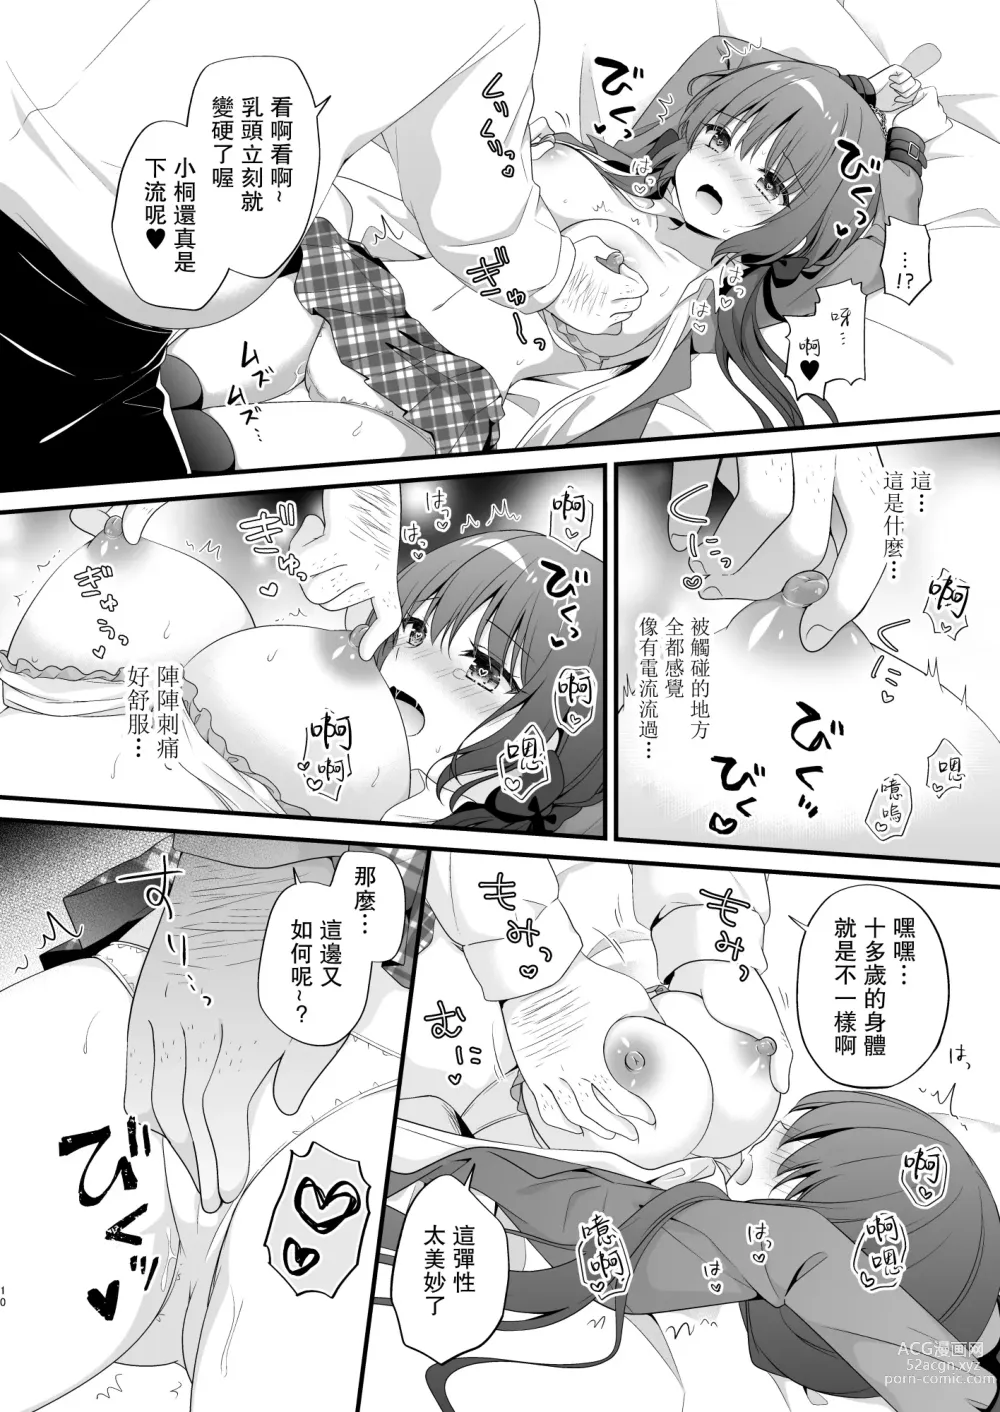 Page 9 of doujinshi Papakatsu Shoshinsha Kirika-chan 2-Kaime!